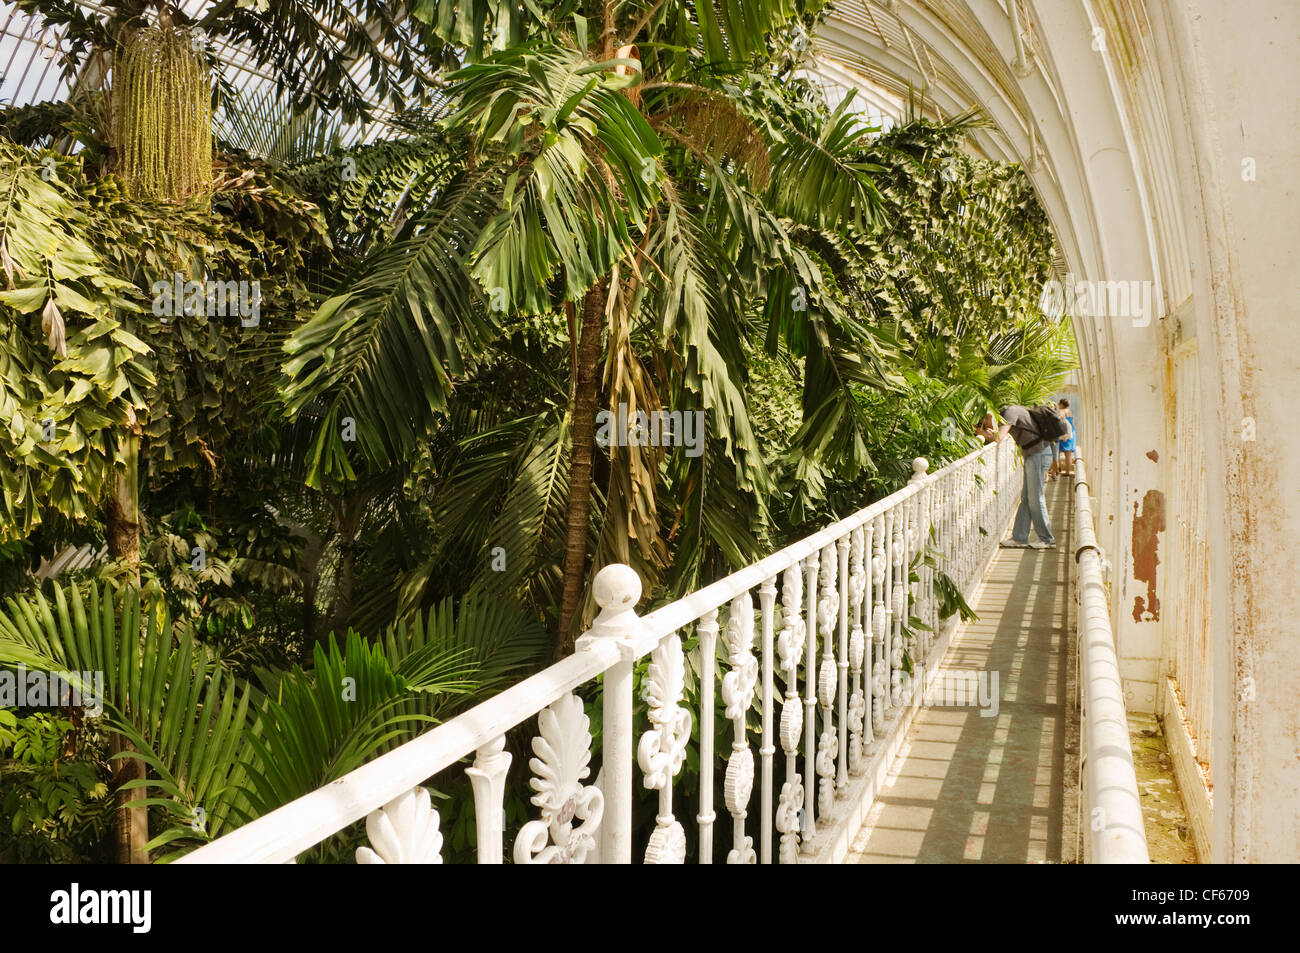 Intérieur de la Palm House, la colonie la plus importante structure de verre et de fer de l'époque victorienne dans le monde, à Kew Gardens. Banque D'Images